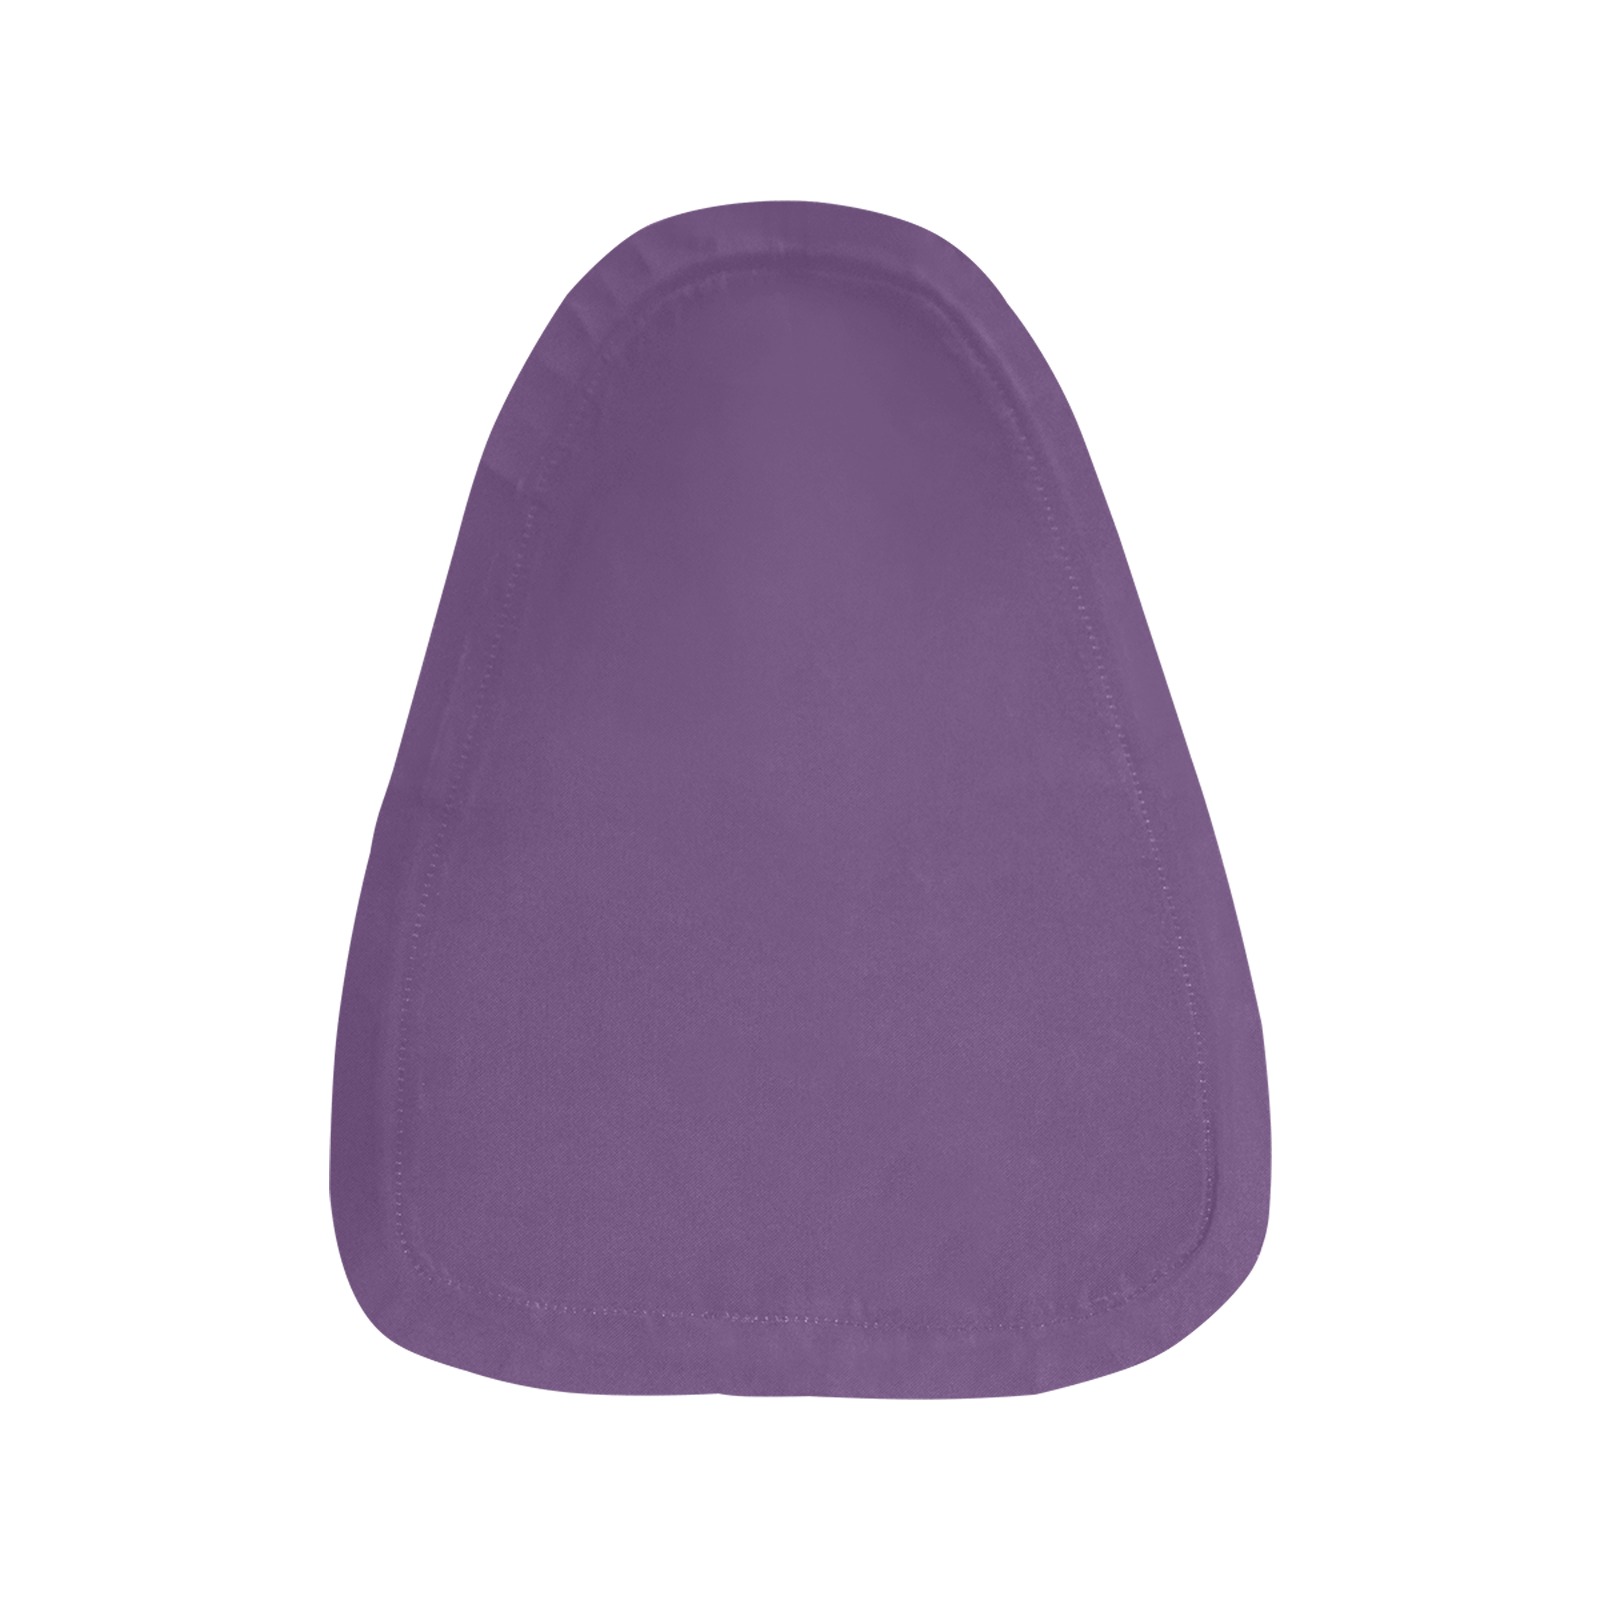 color purple 3515U Waterproof Bicycle Seat Cover